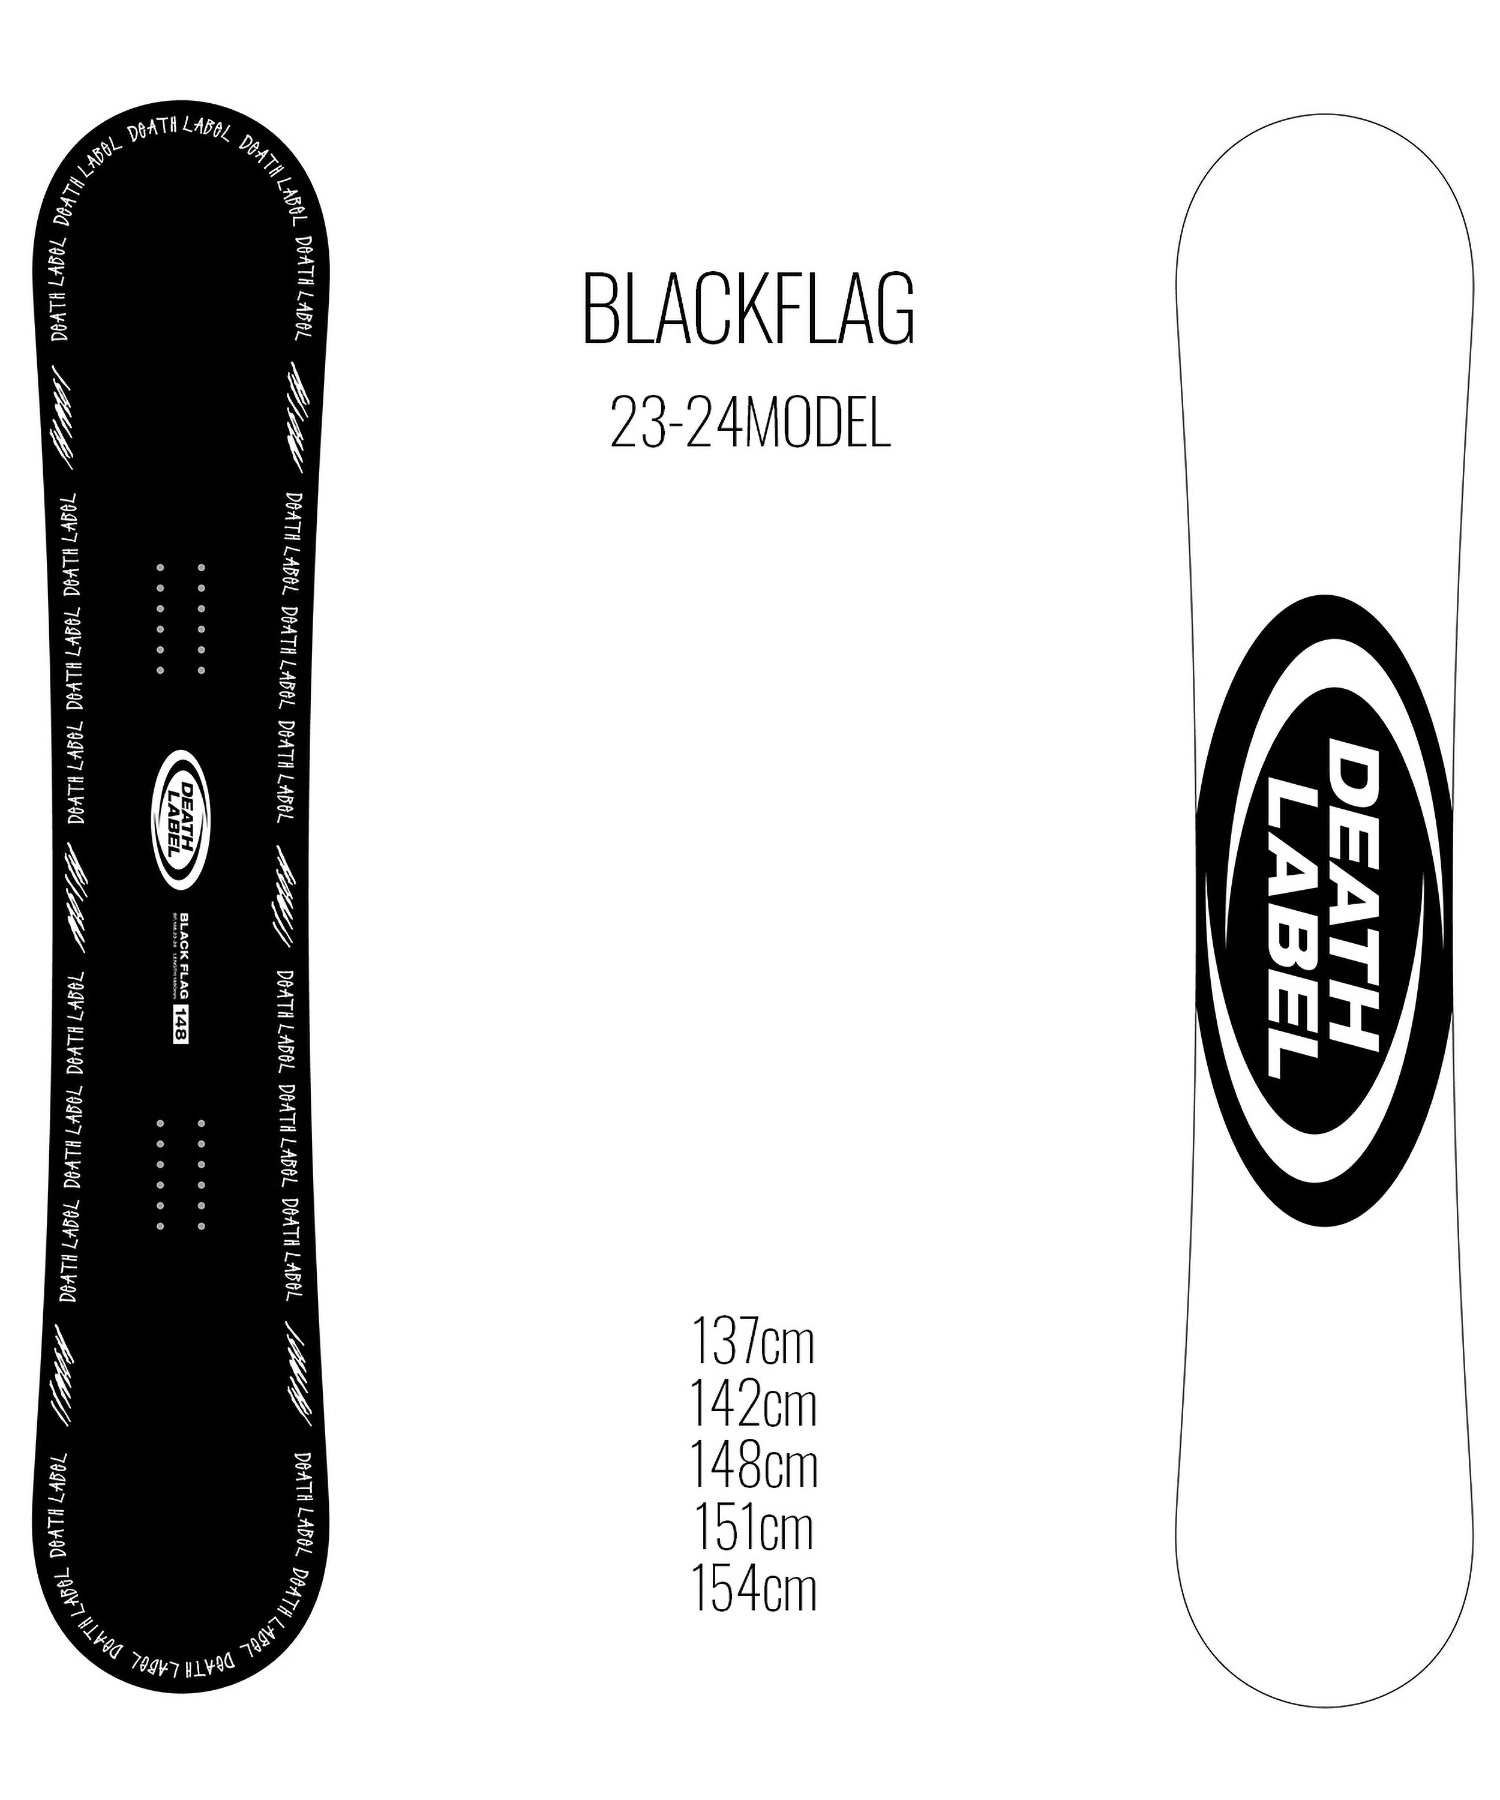 【早期購入/店頭受取対象外】スノーボード 板 ユニセックス DEATH LABEL デスレーベル BLACKFLAG 23-24モデル ムラサキスポーツ KK C2(BLACKFLAG-137cm)